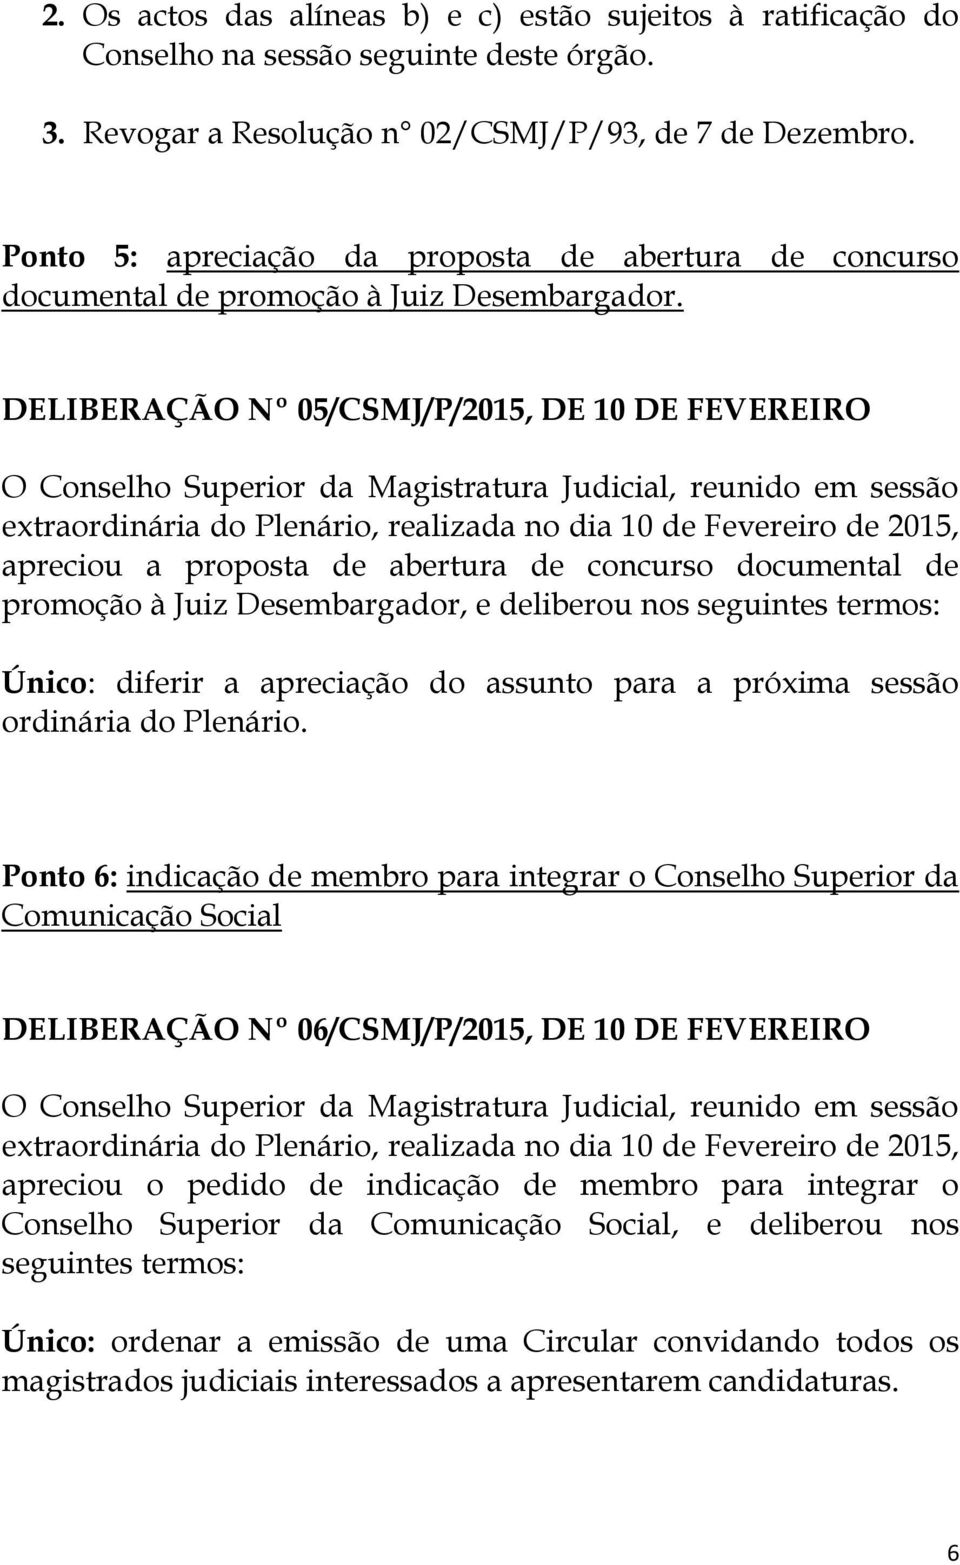 DELIBERAÇÃO Nº 05/CSMJ/P/2015, DE 10 DE FEVEREIRO apreciou a proposta de abertura de concurso documental de promoção à Juiz Desembargador, e deliberou nos seguintes termos: Único: diferir a